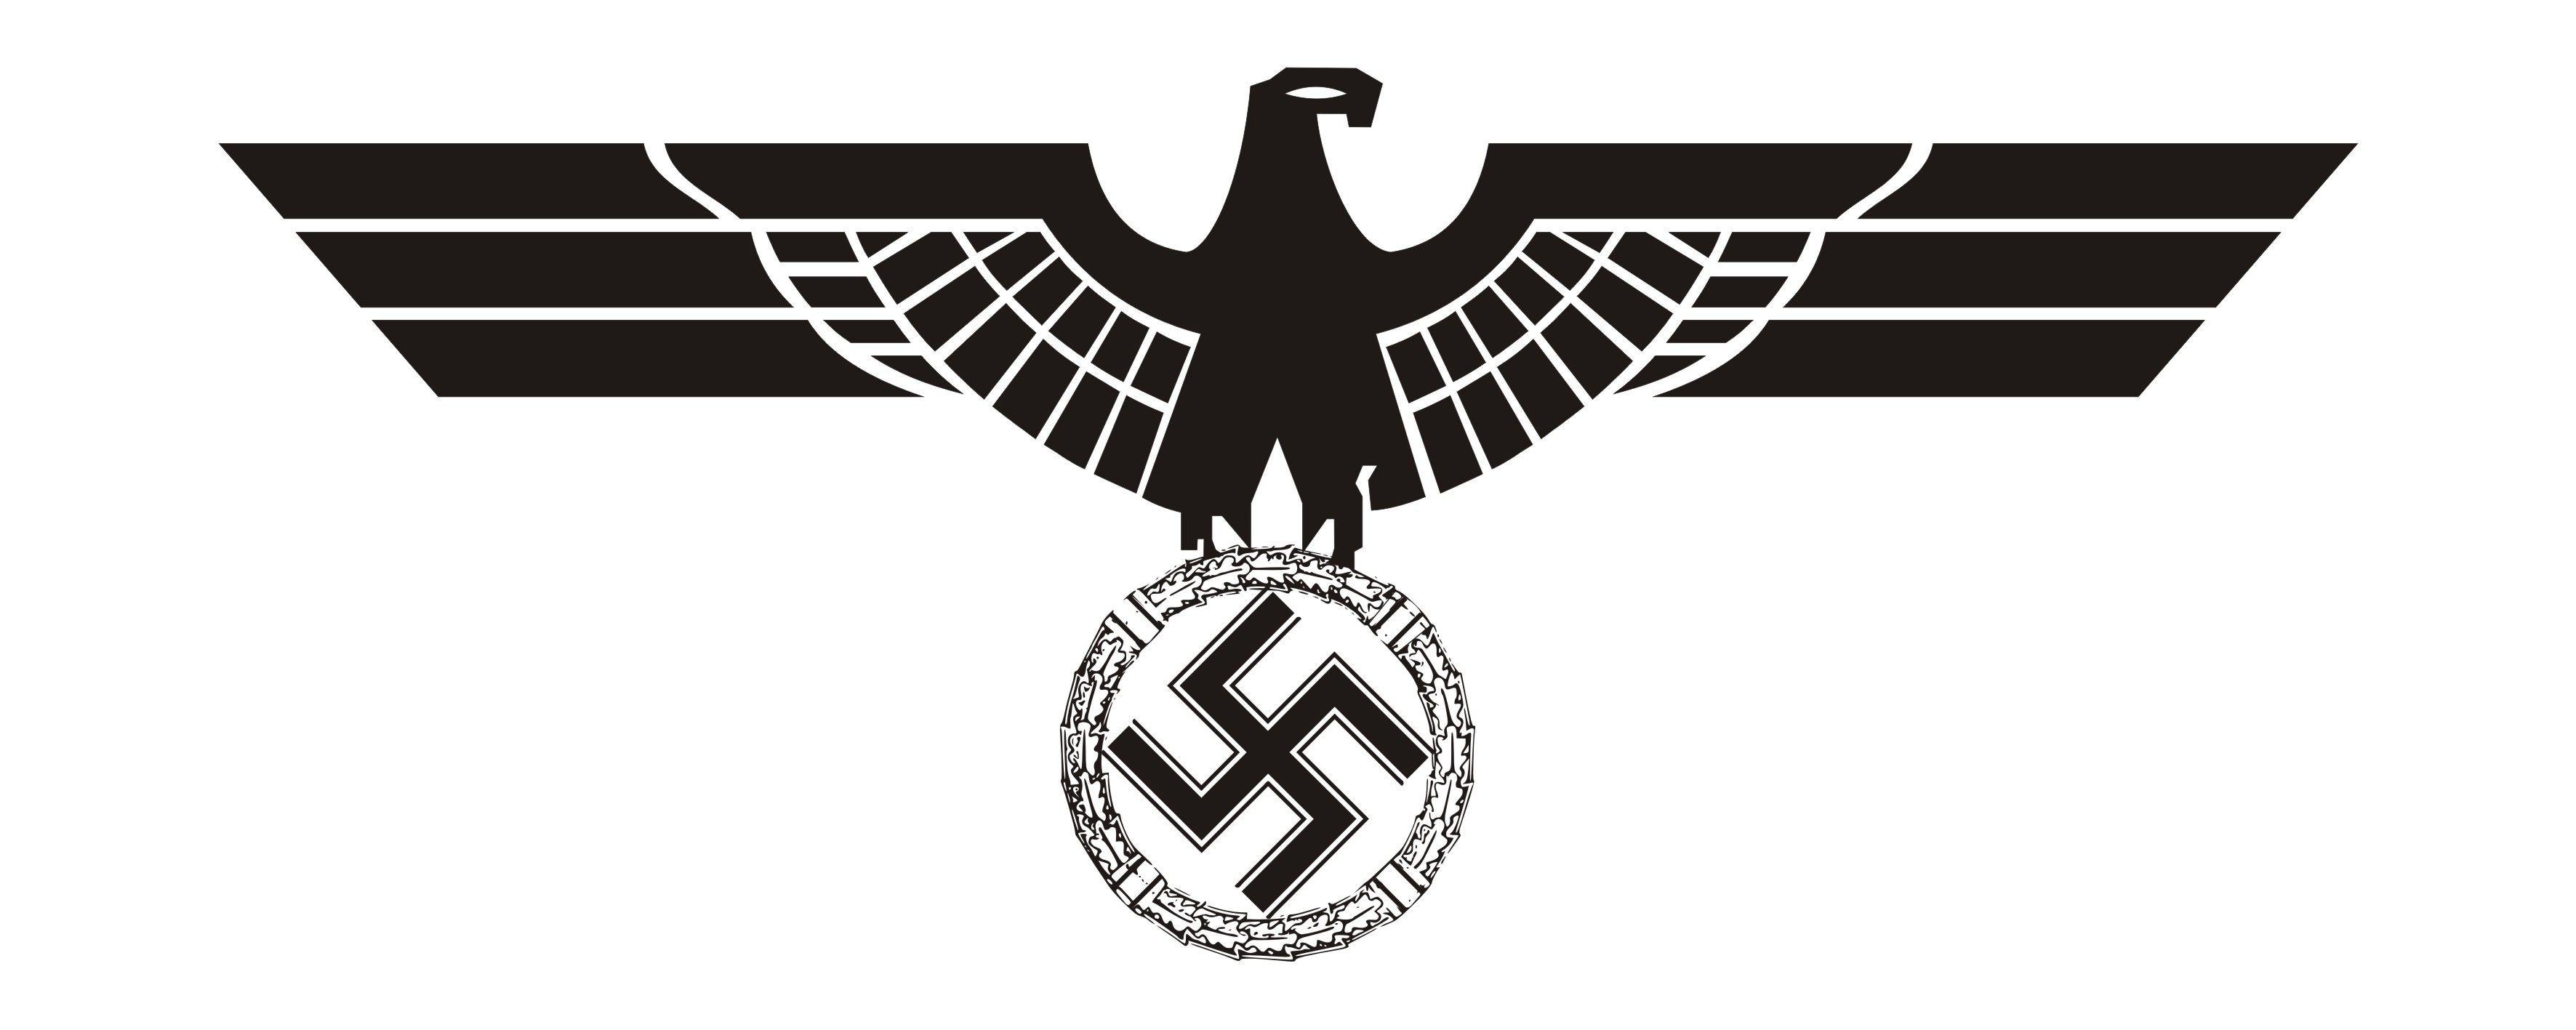 Nazi Logo - File:Logo Hitler.jpg - Wikimedia Commons